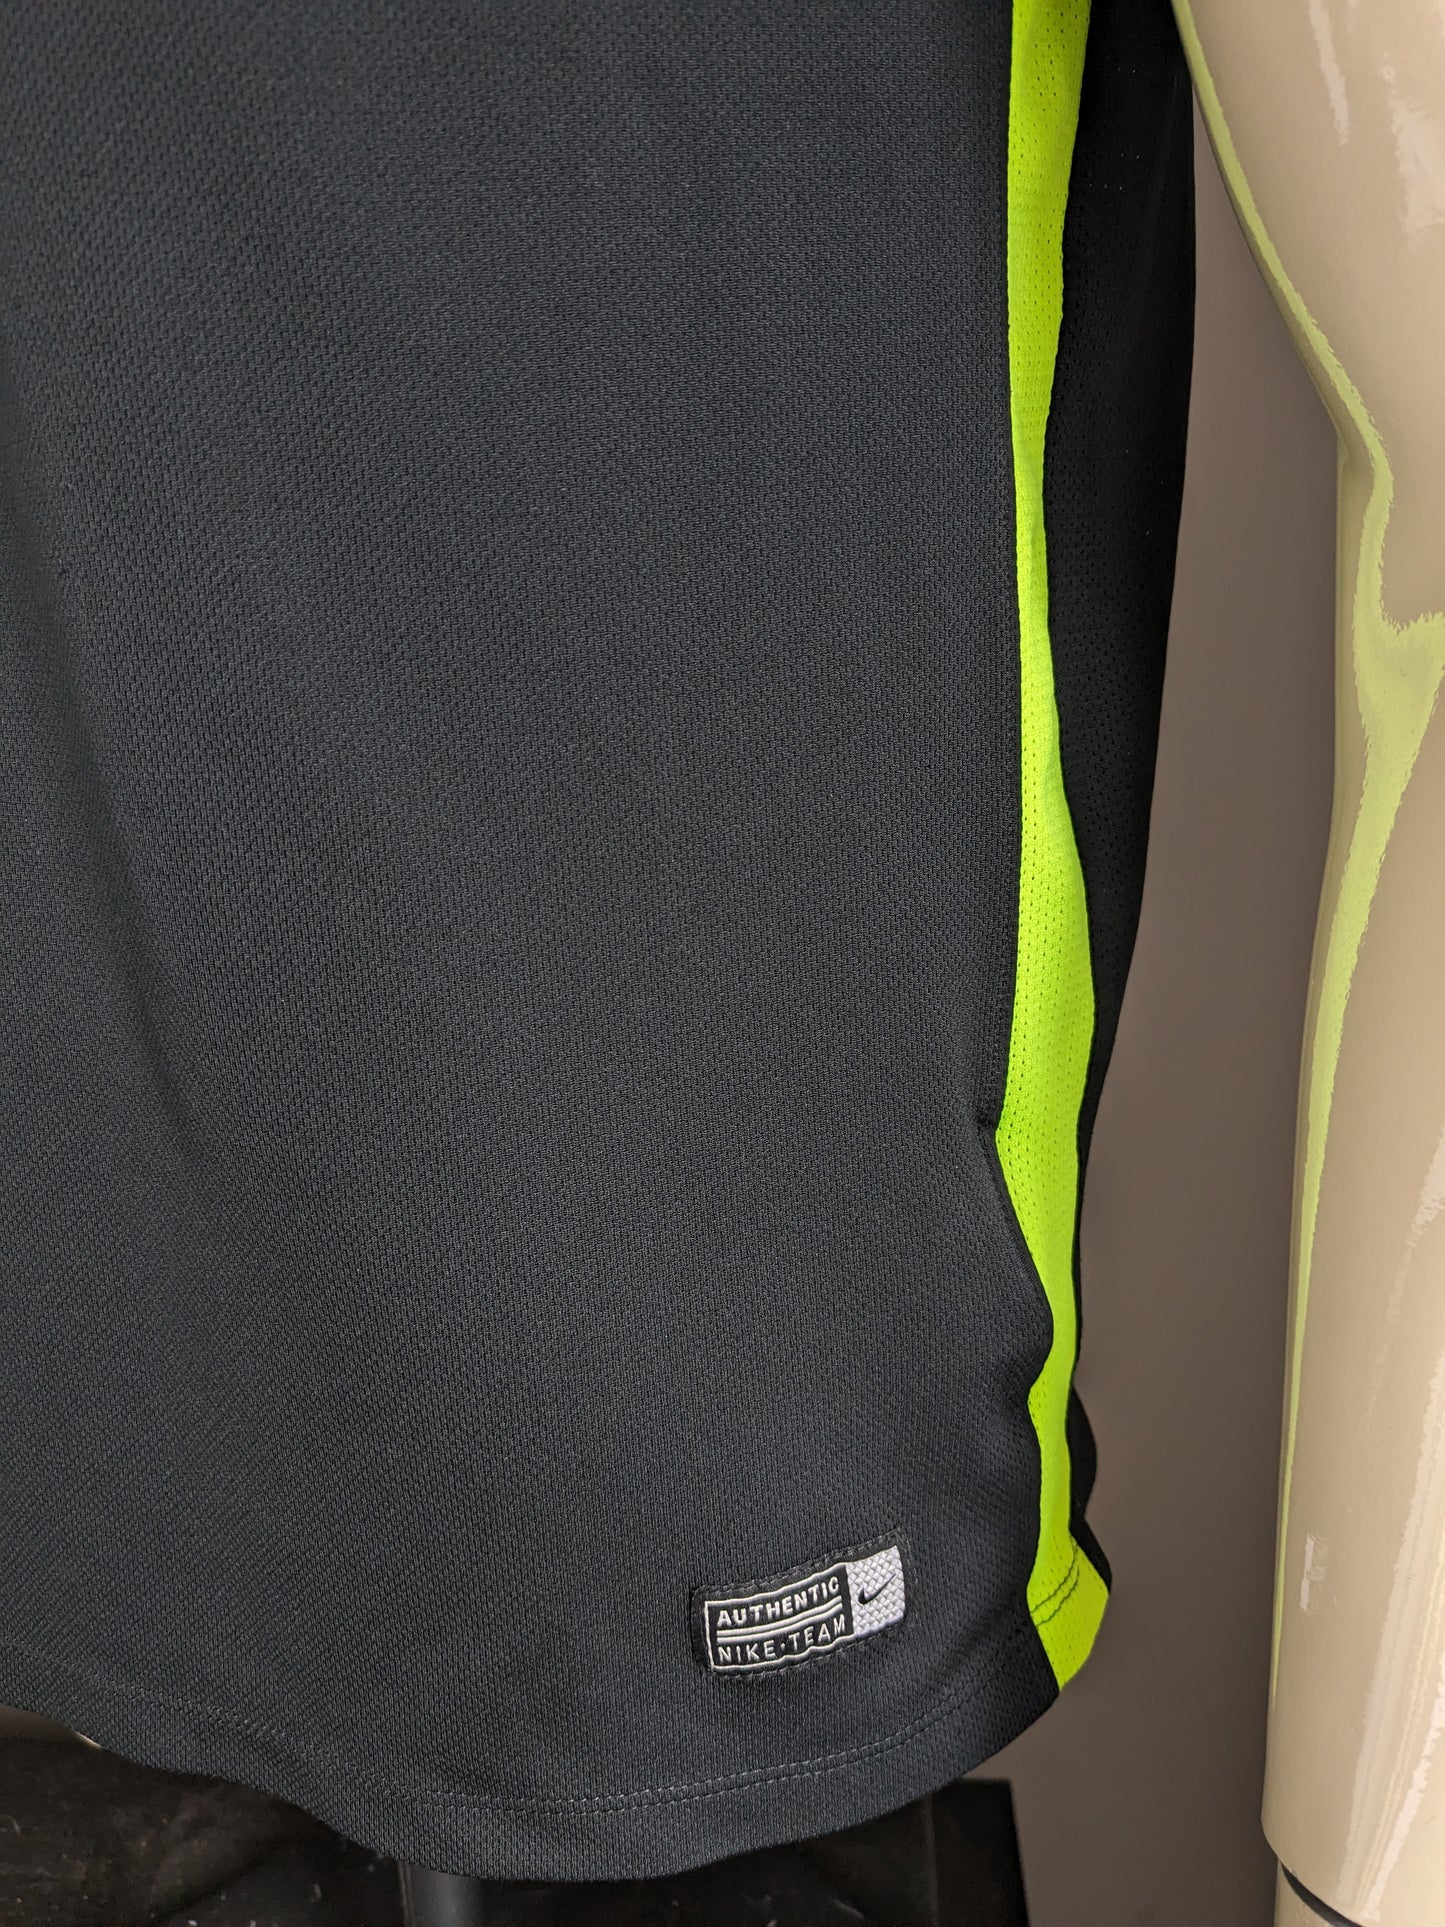 Nike Alemannia Sport Polo. Schwarzgrün gefärbt. Größe L.